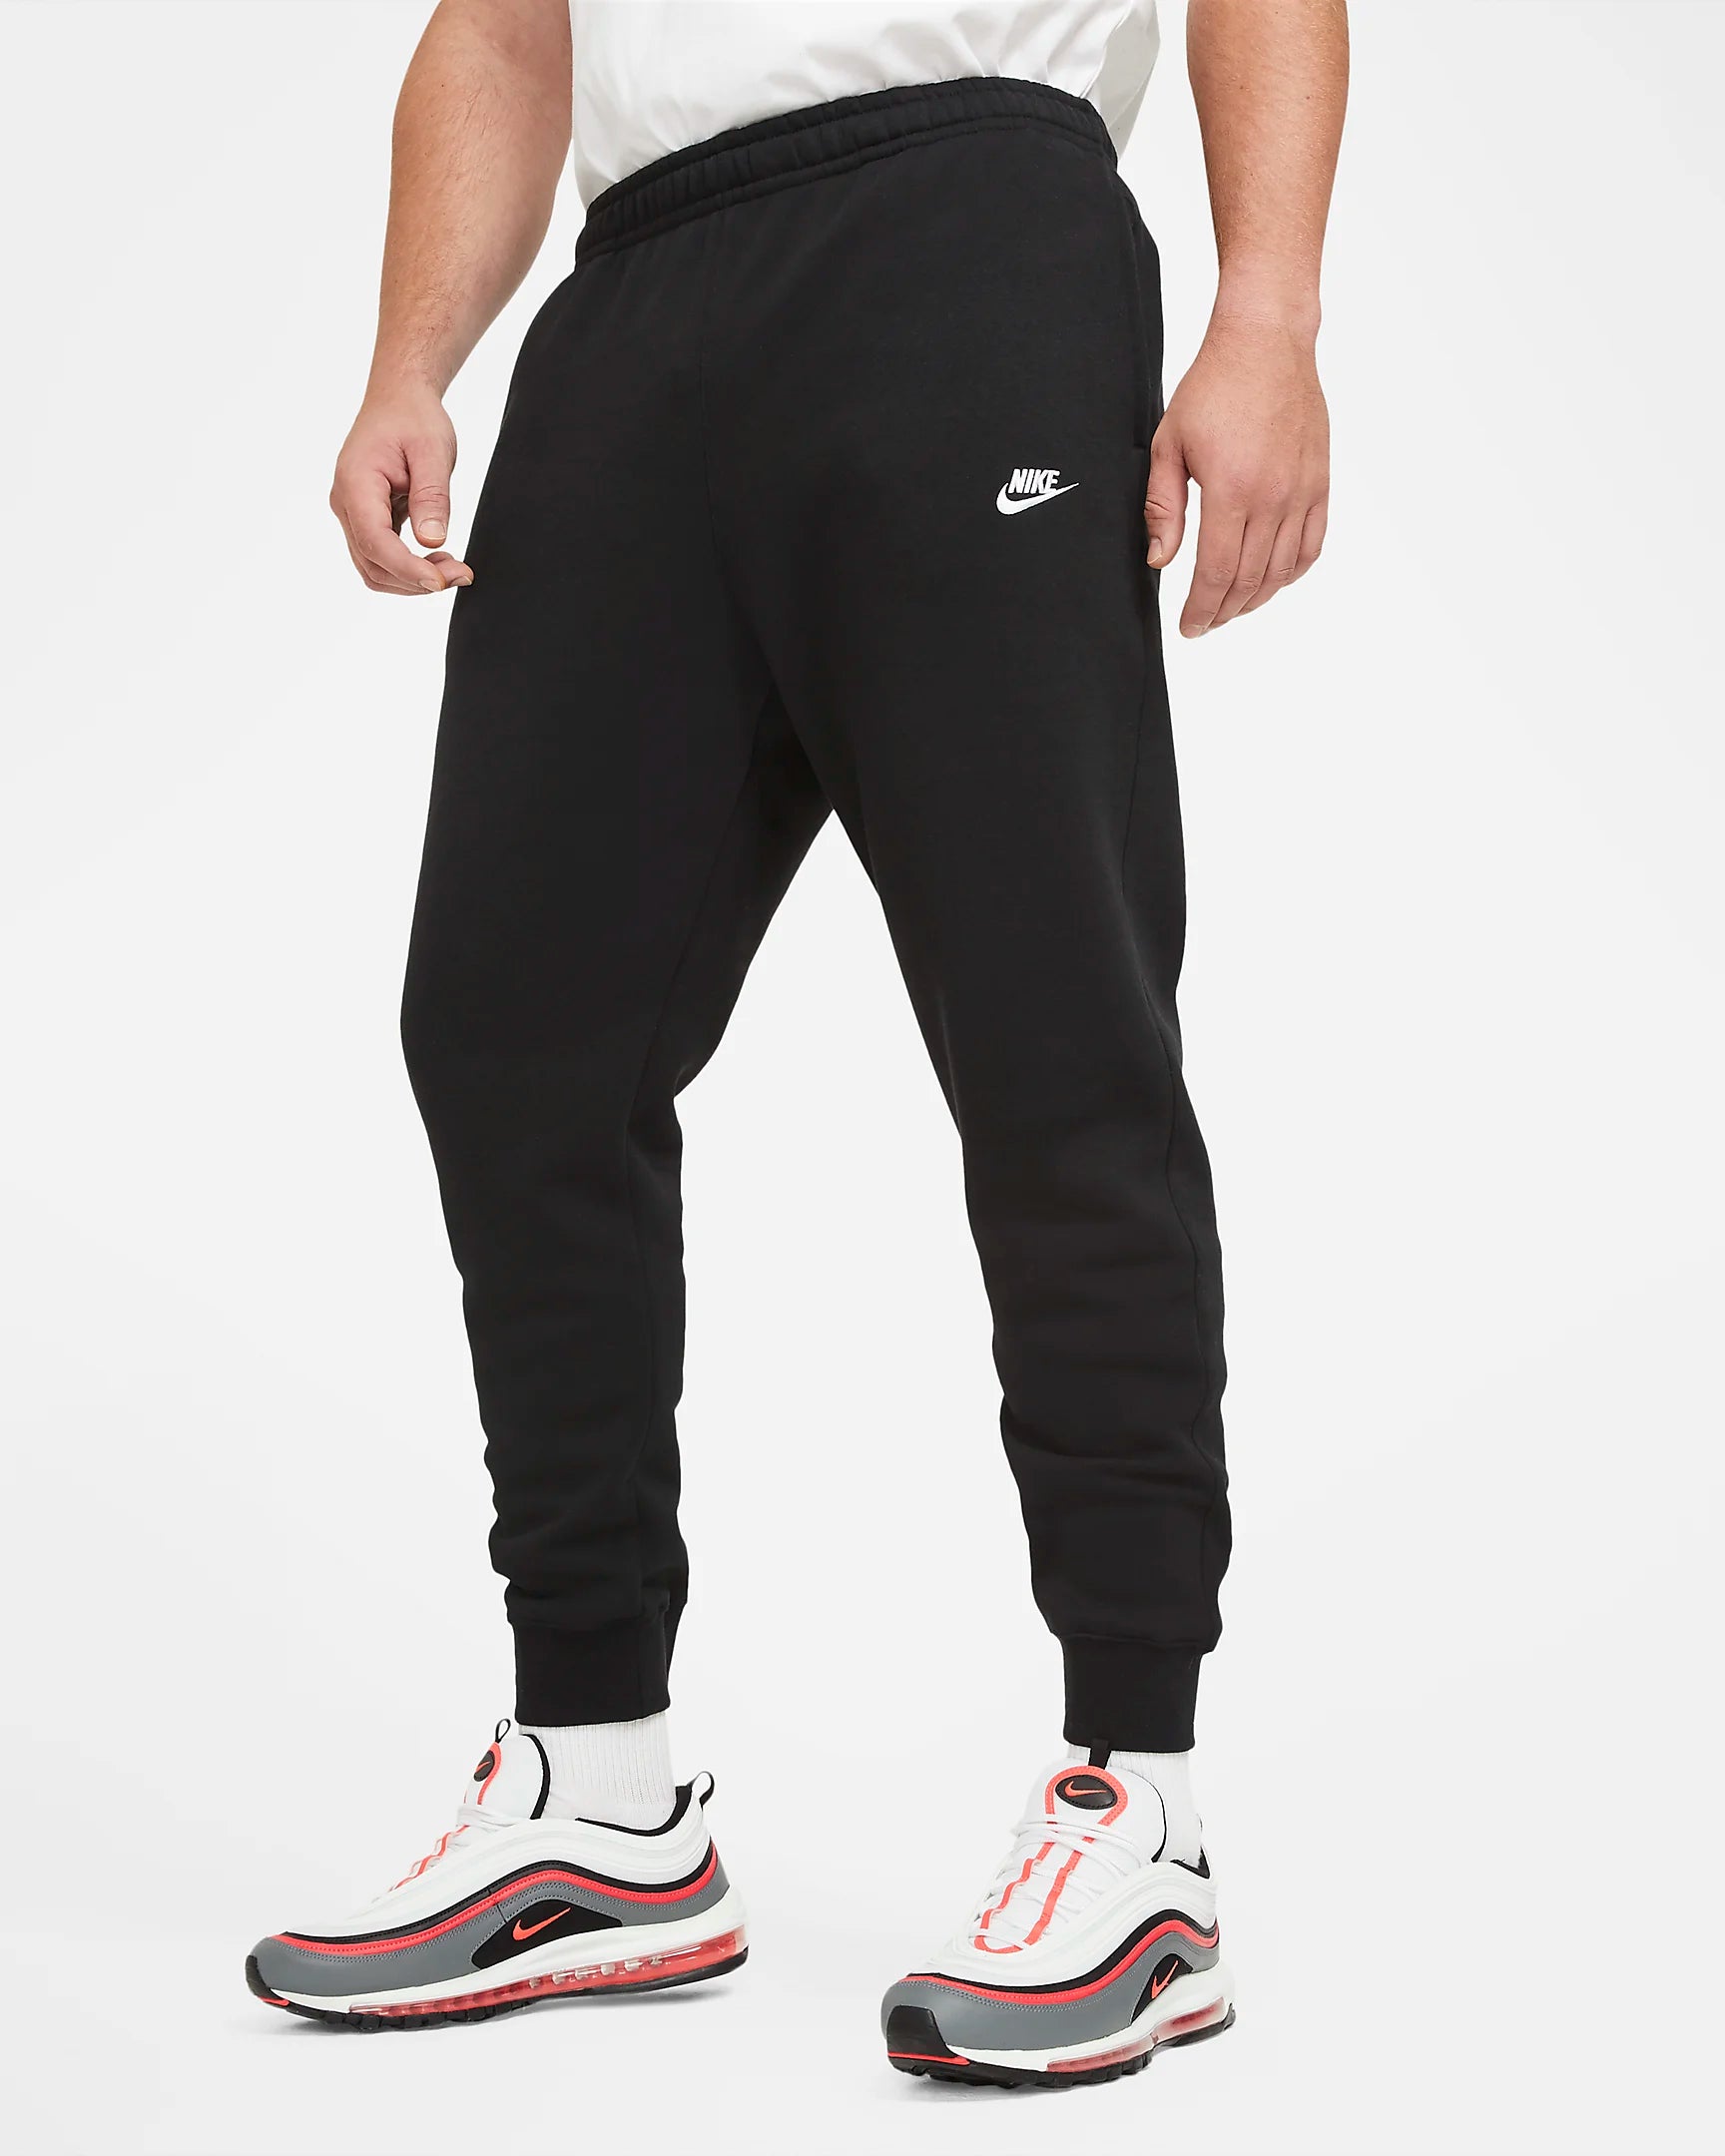 Joggers Nike Fleece - Negro